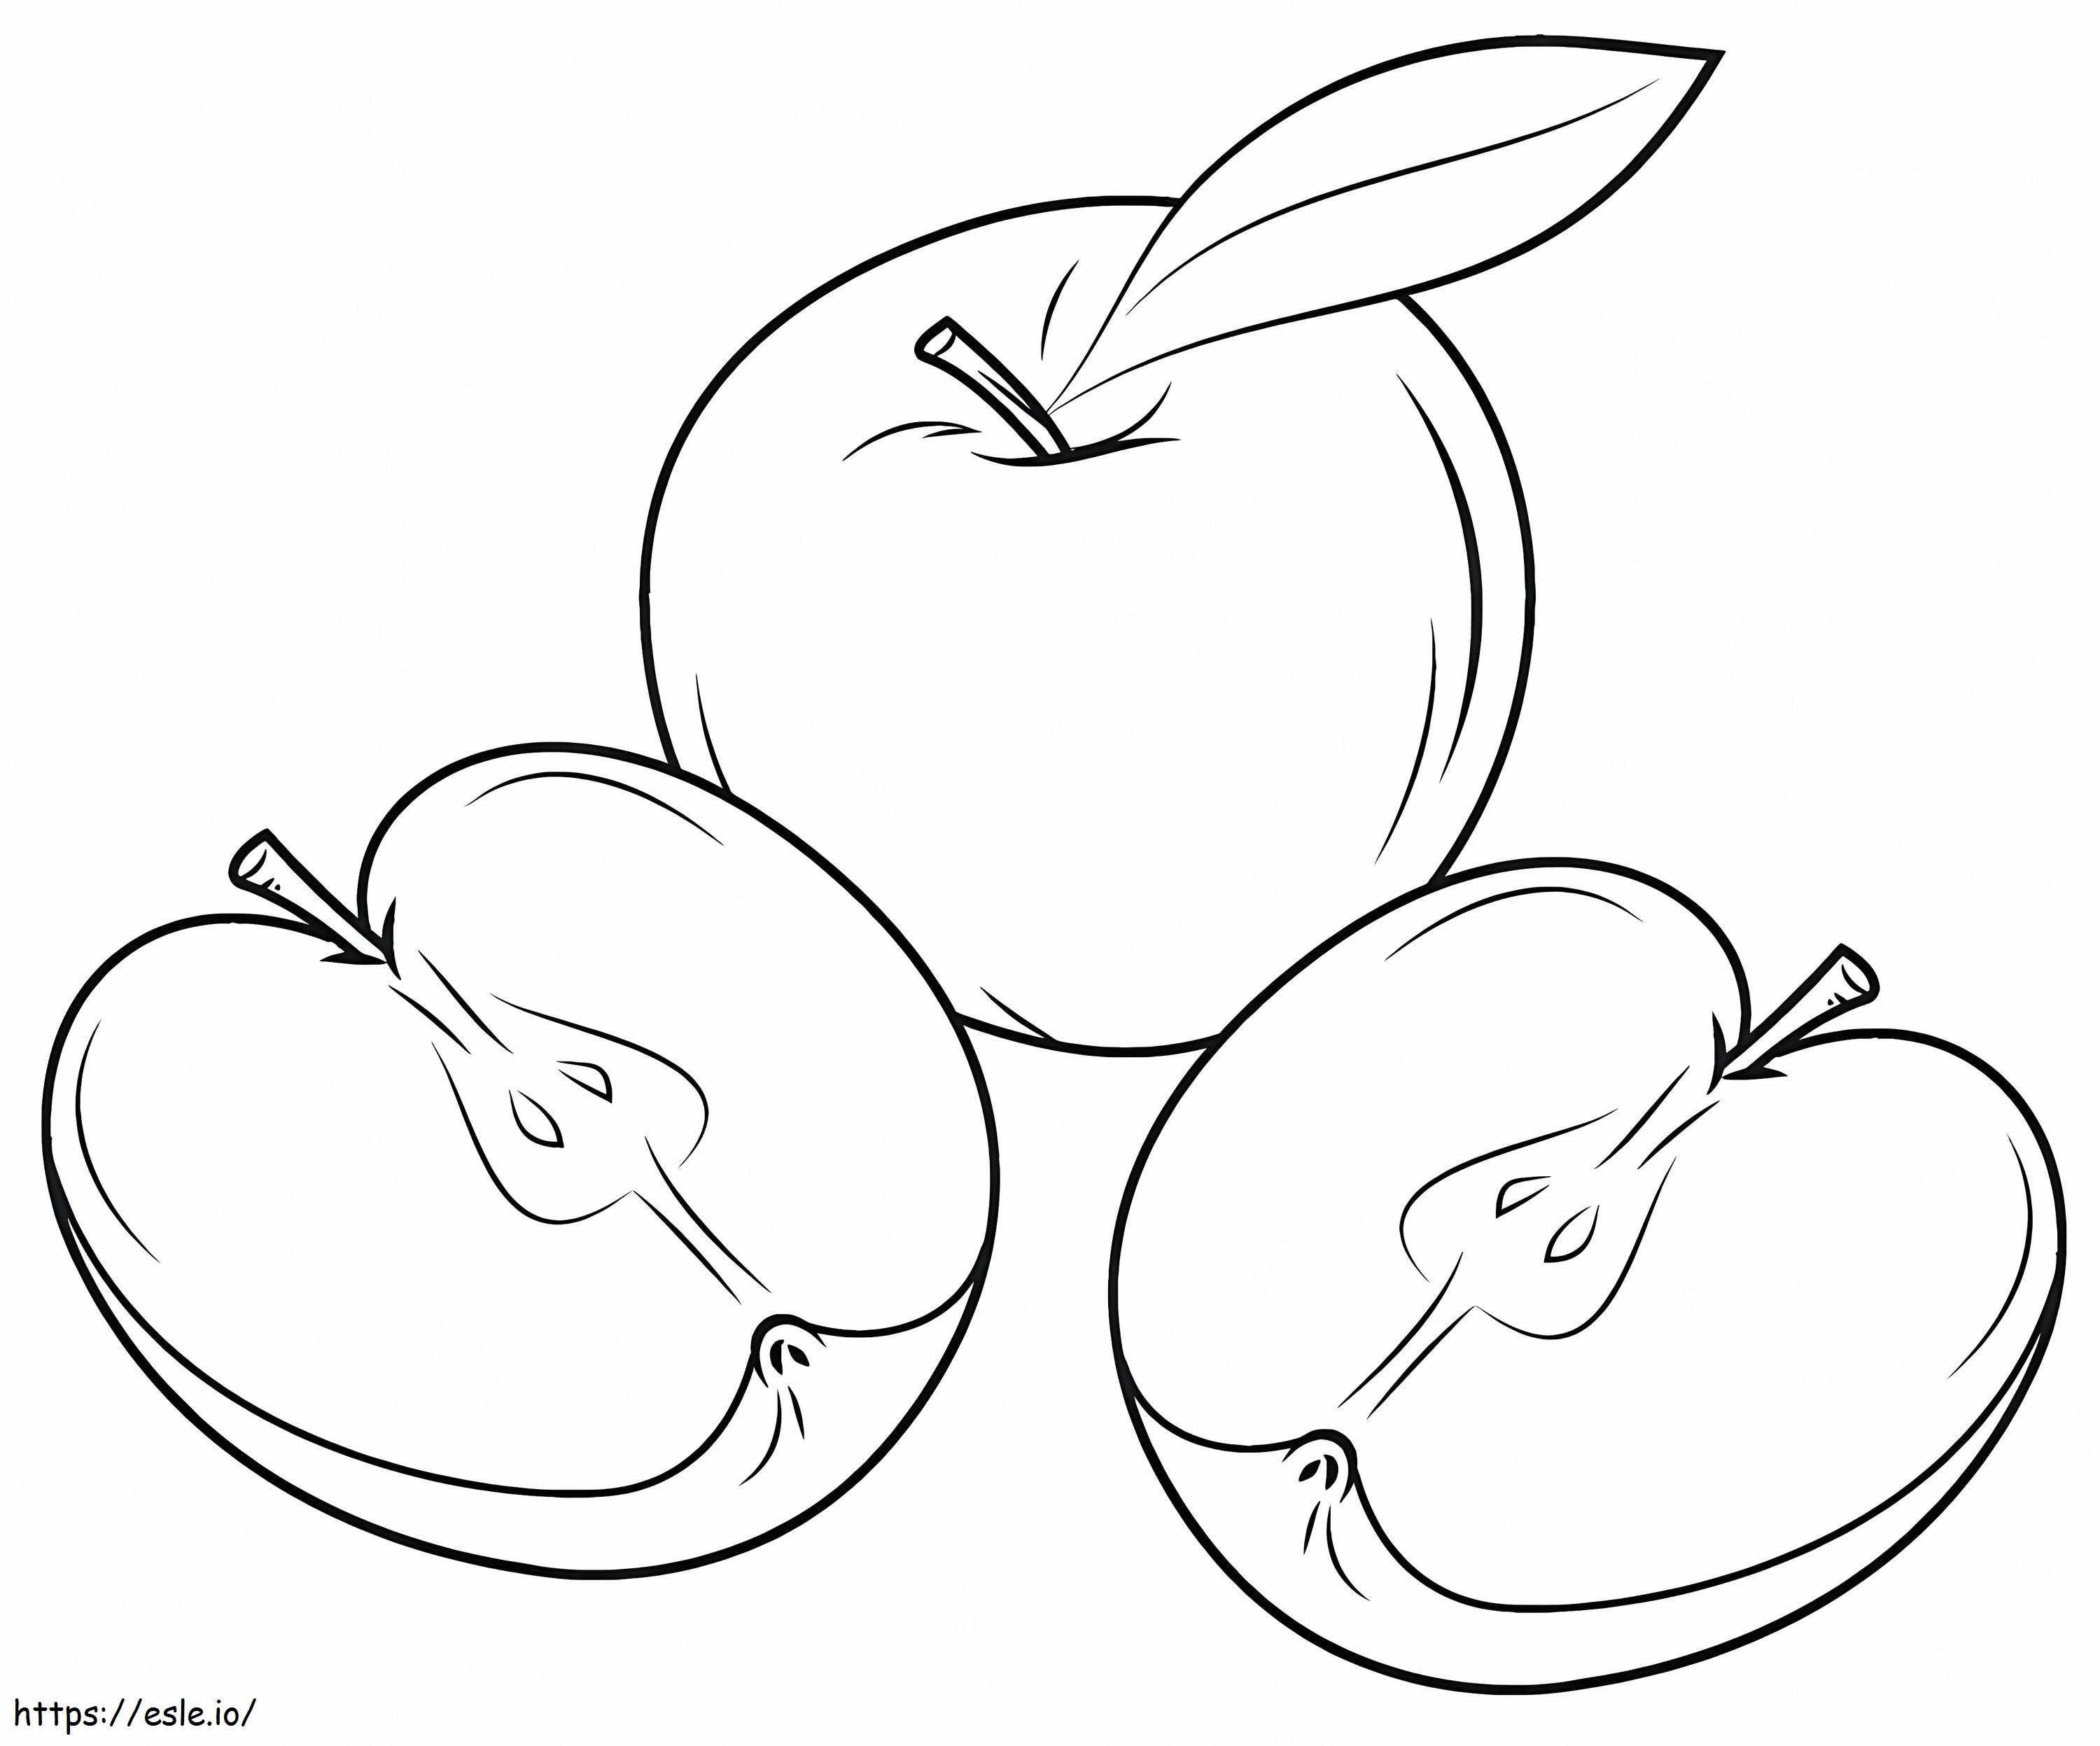 Uma maçã e duas fatias de maçã para colorir